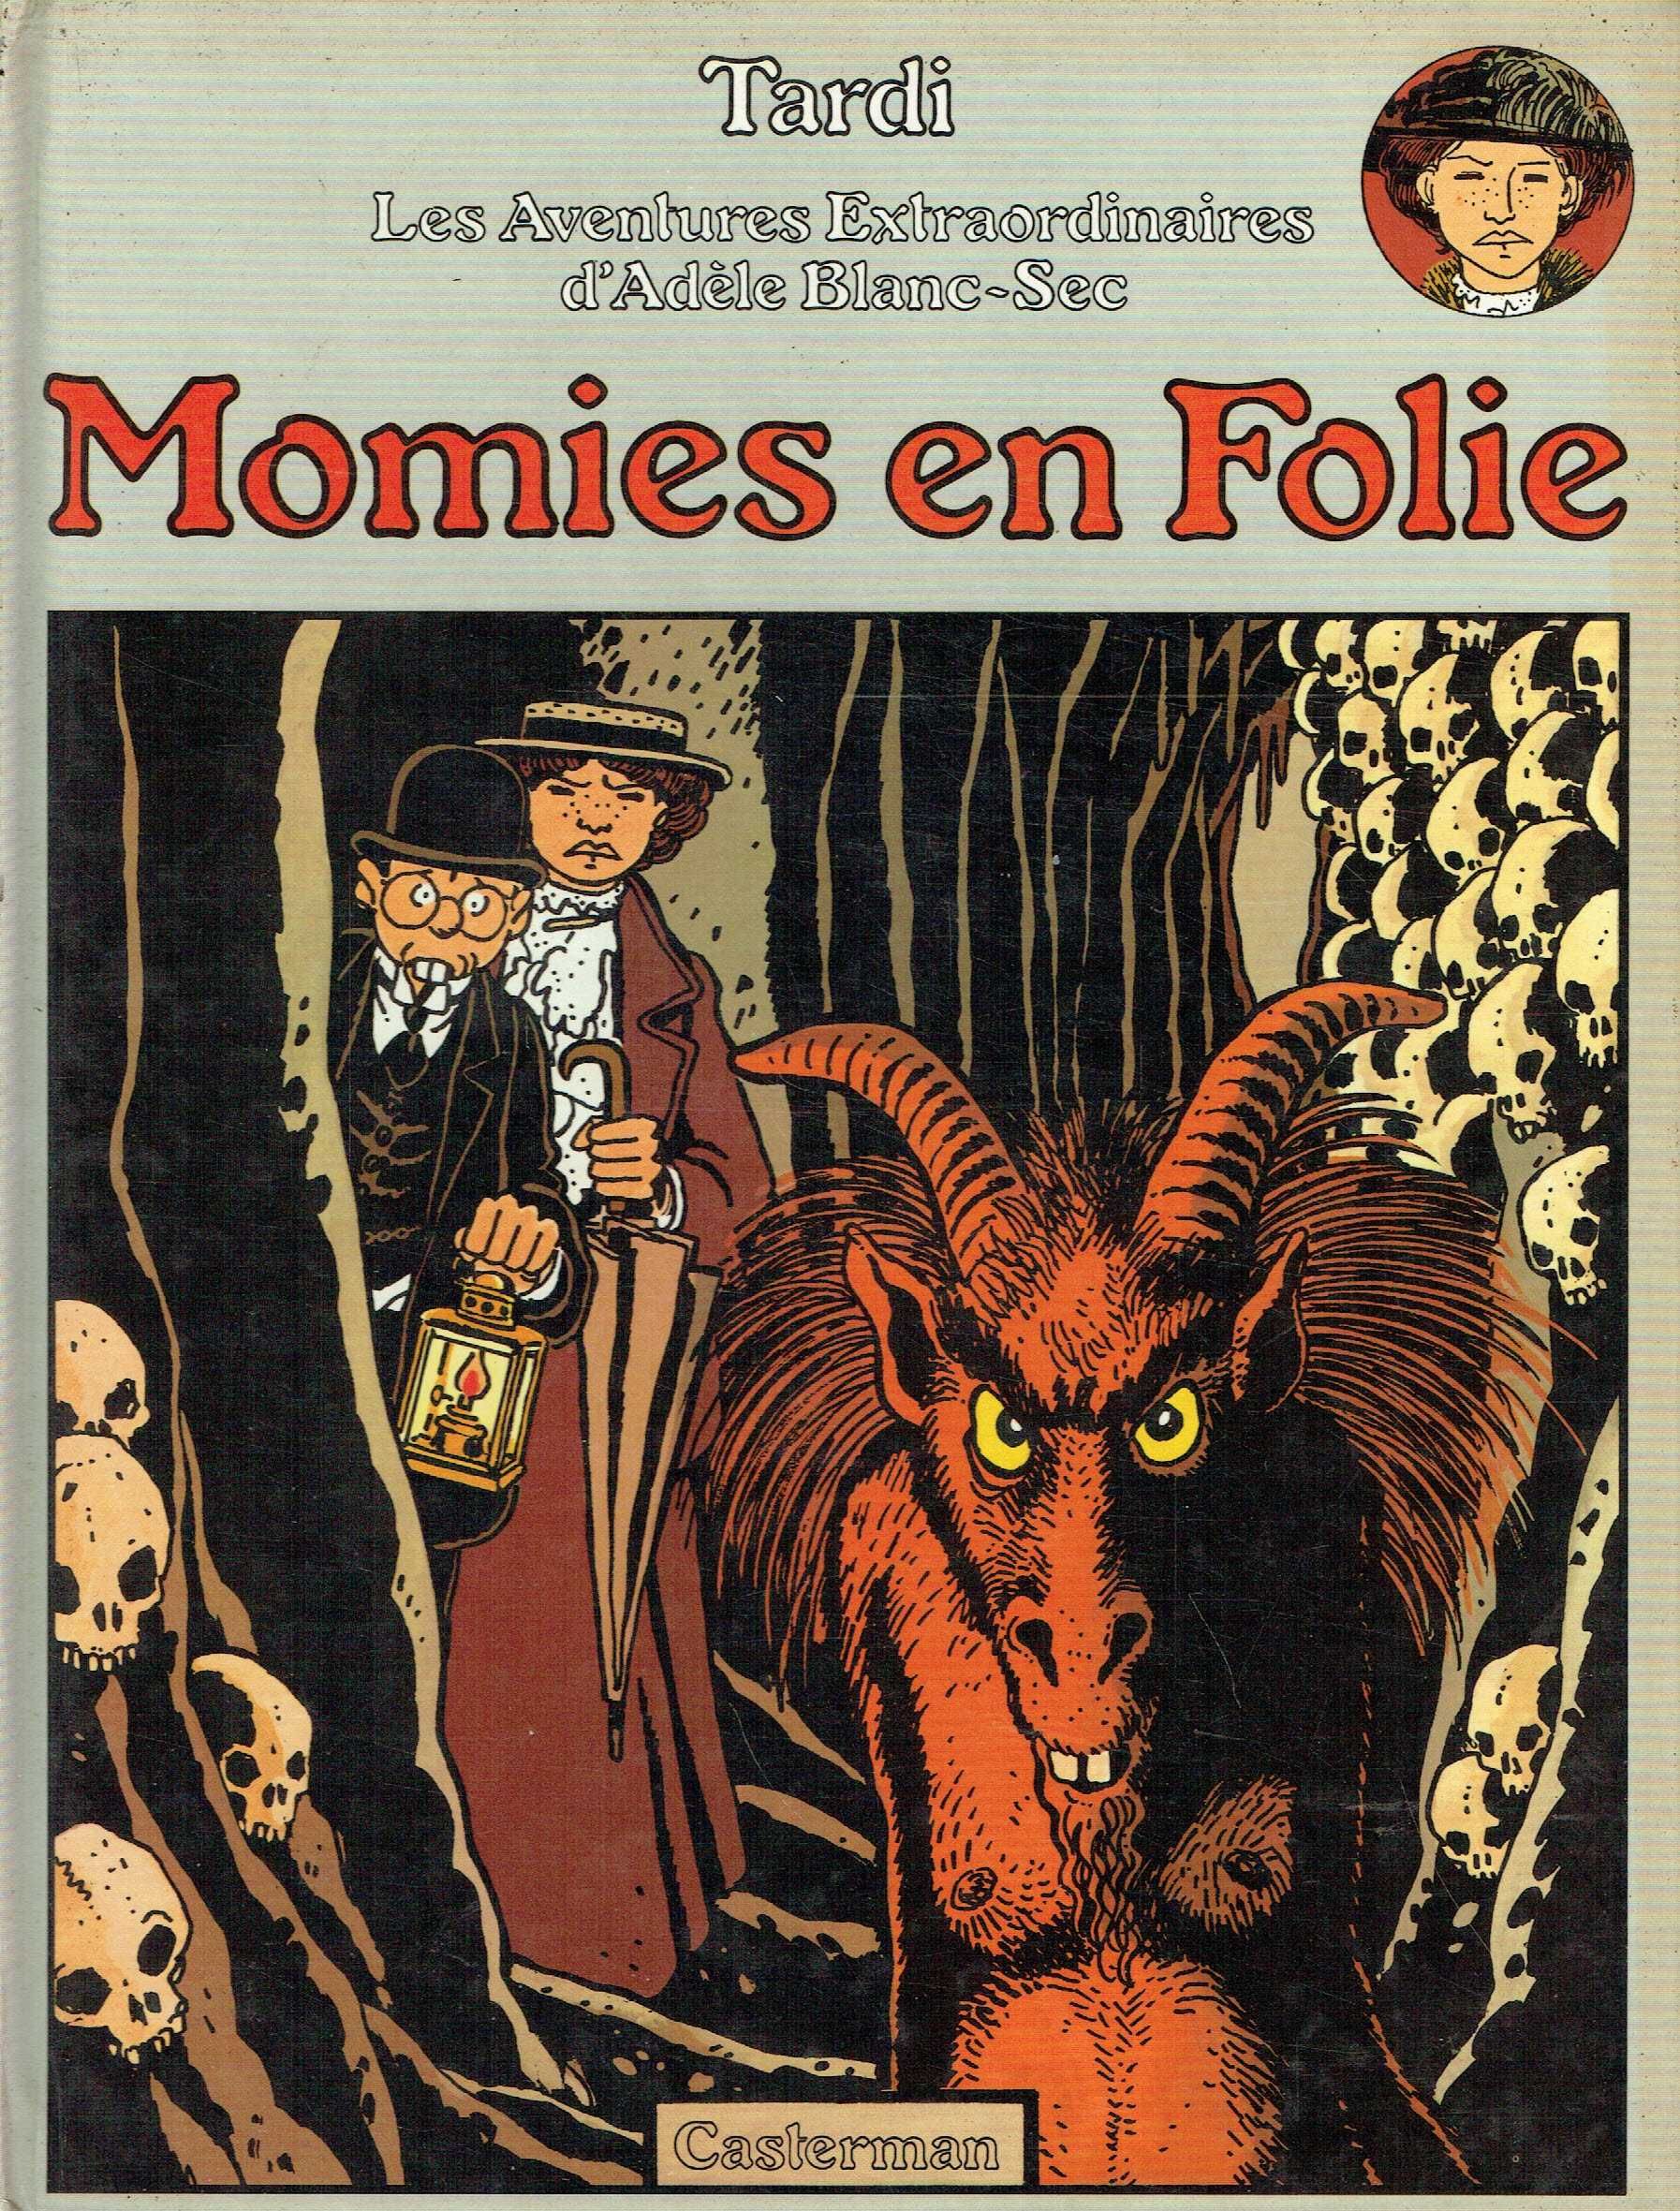 11743

Adèle Blanc-Sec 
4. Momies en folie
de Jacques Tardi